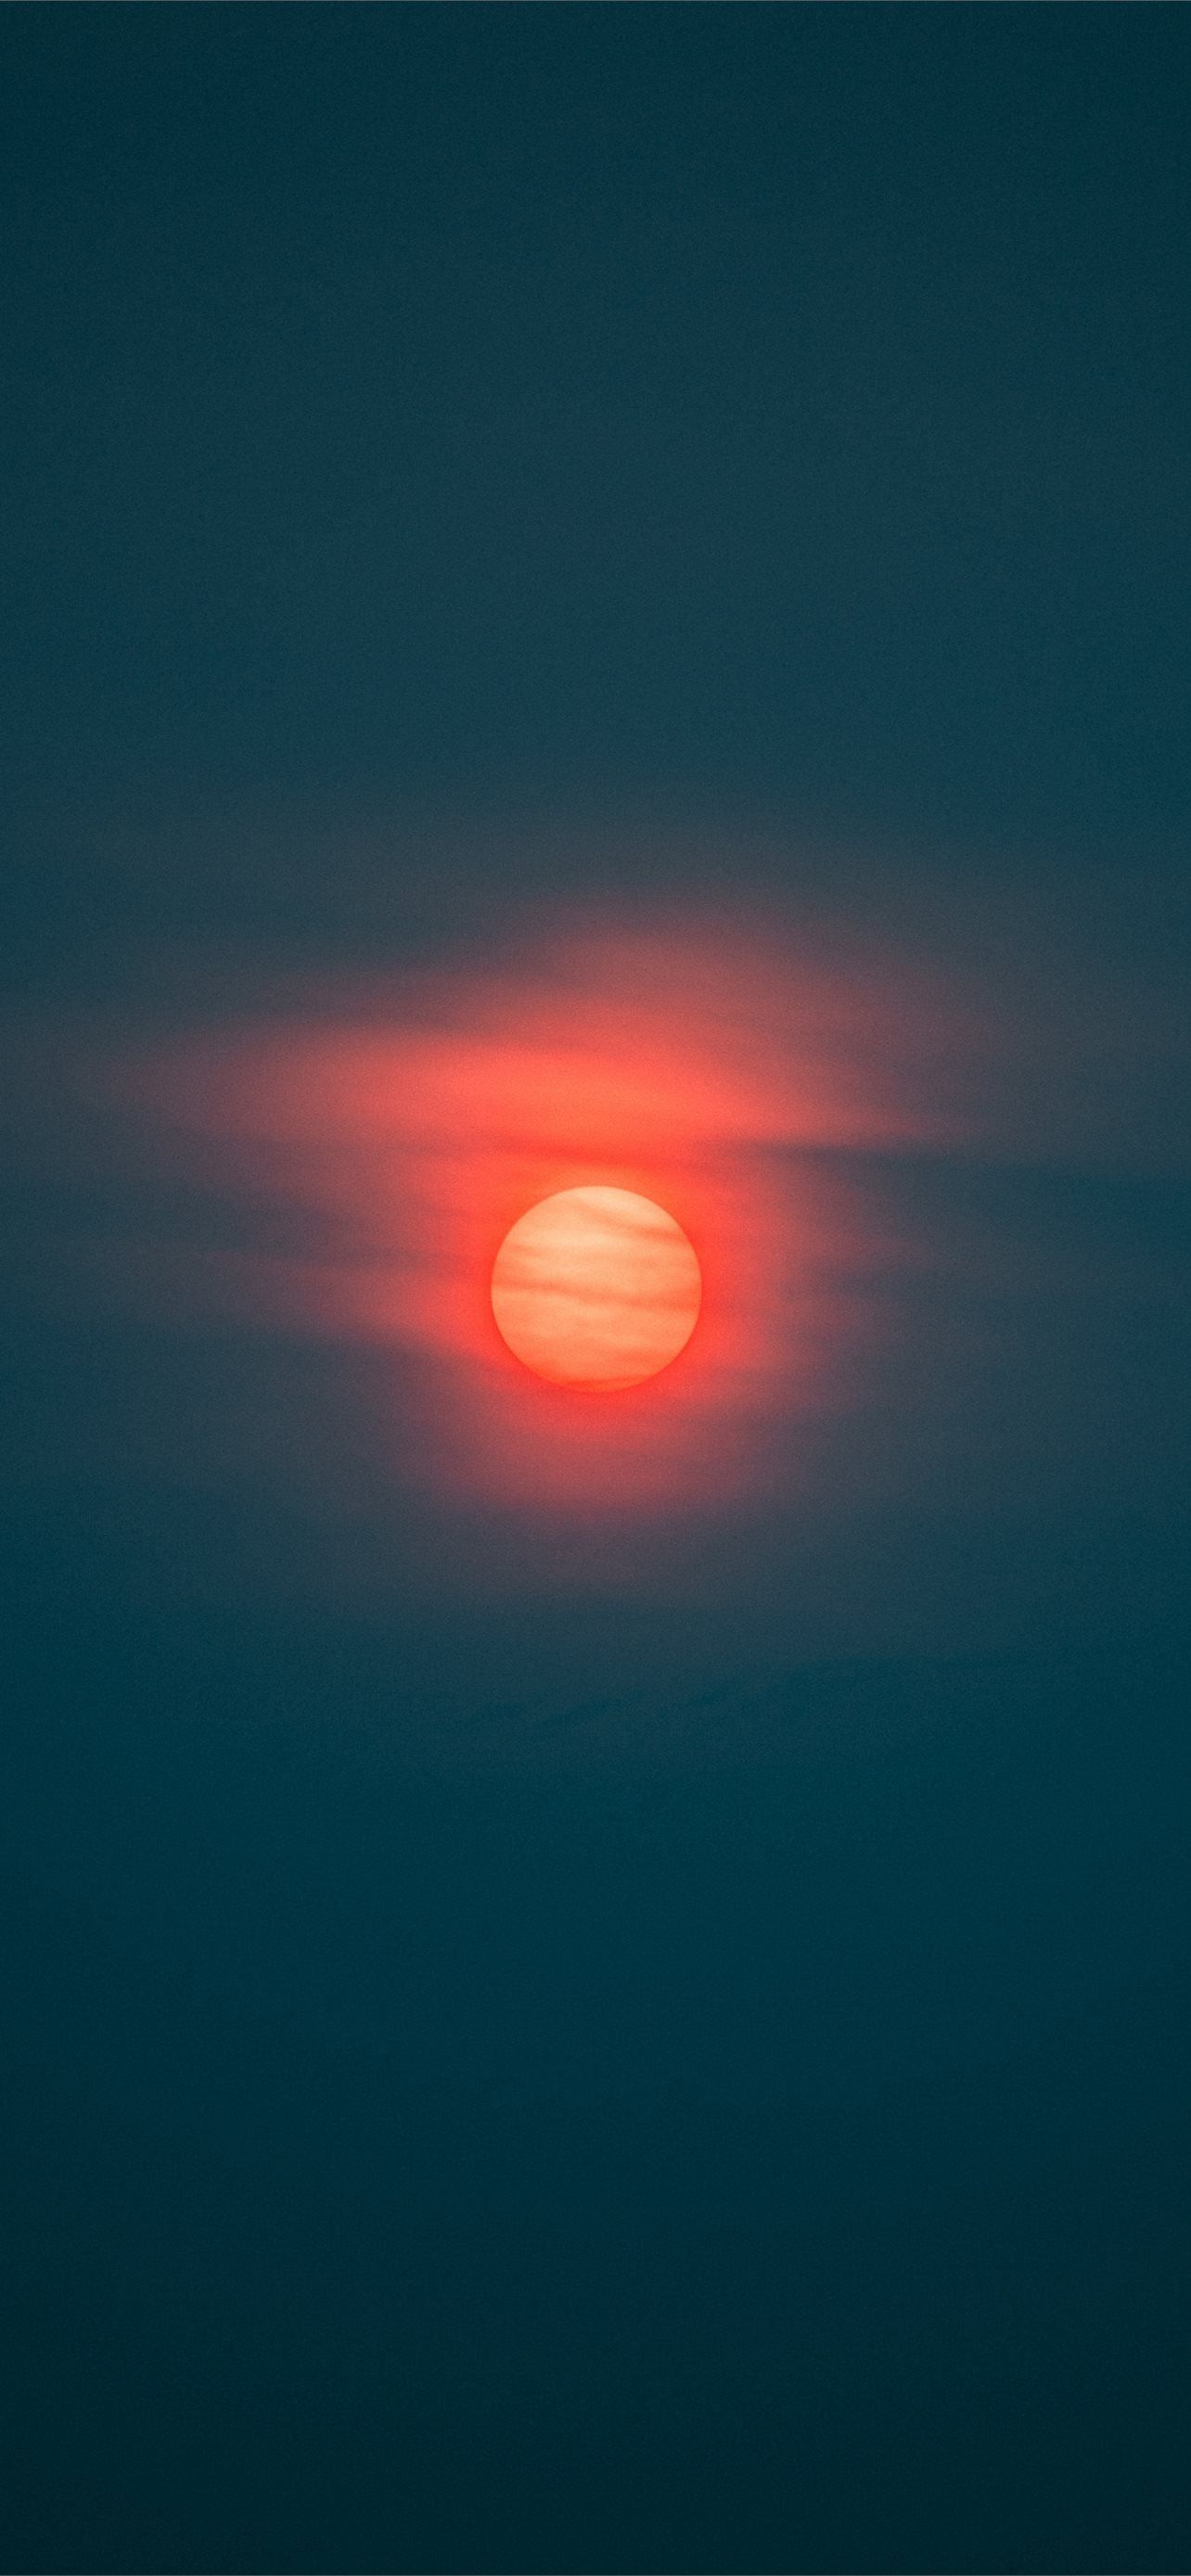 A red sun in a blue sky - Sun